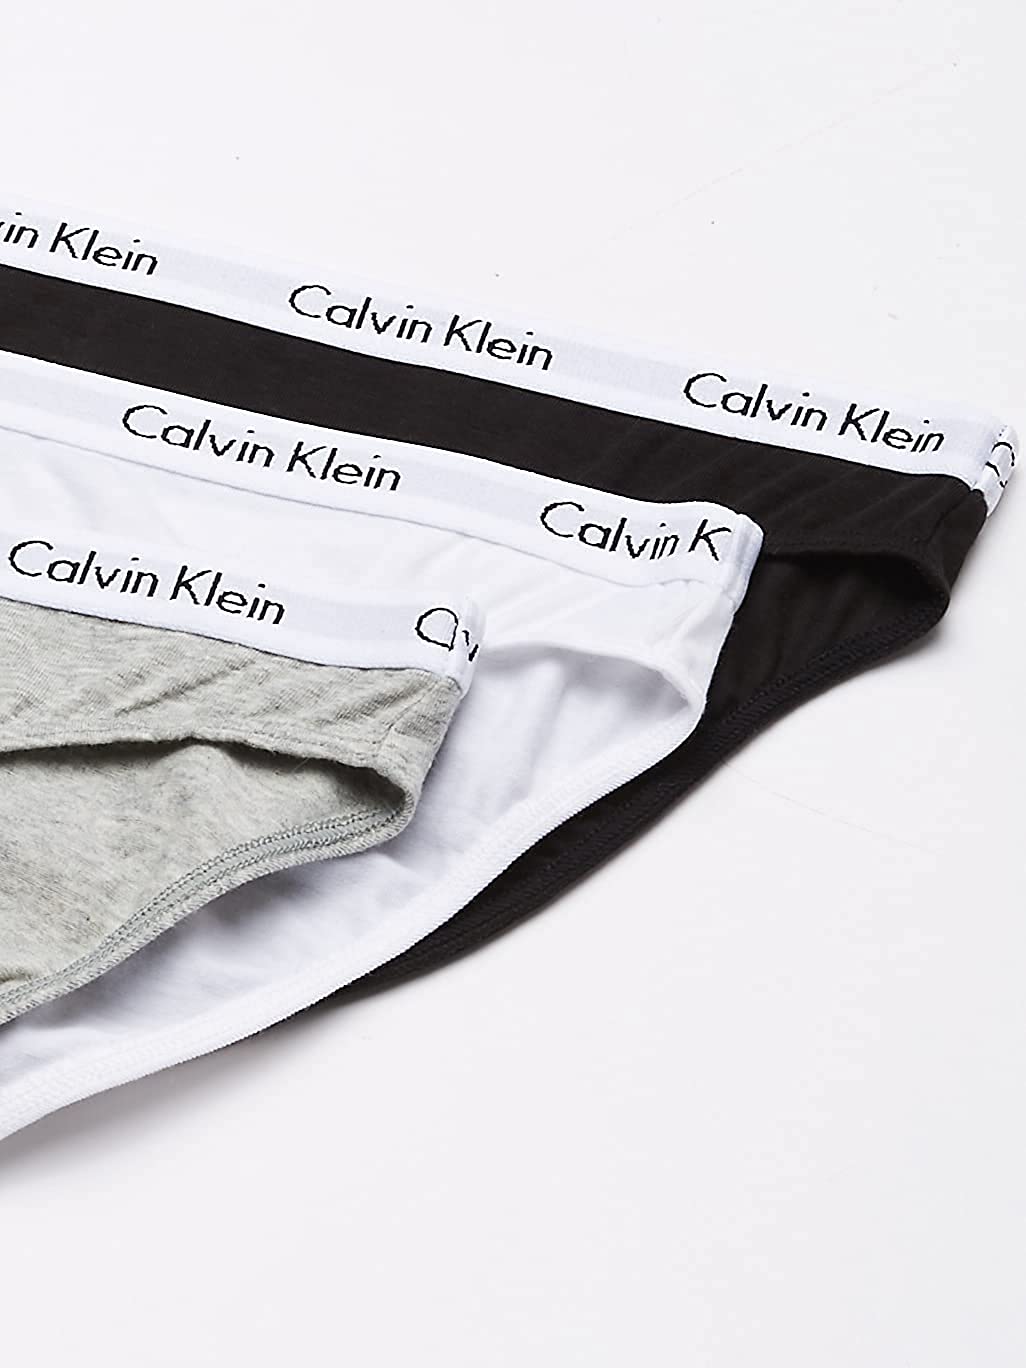 Calvin Klein Womens 3 Pack Modern Brief